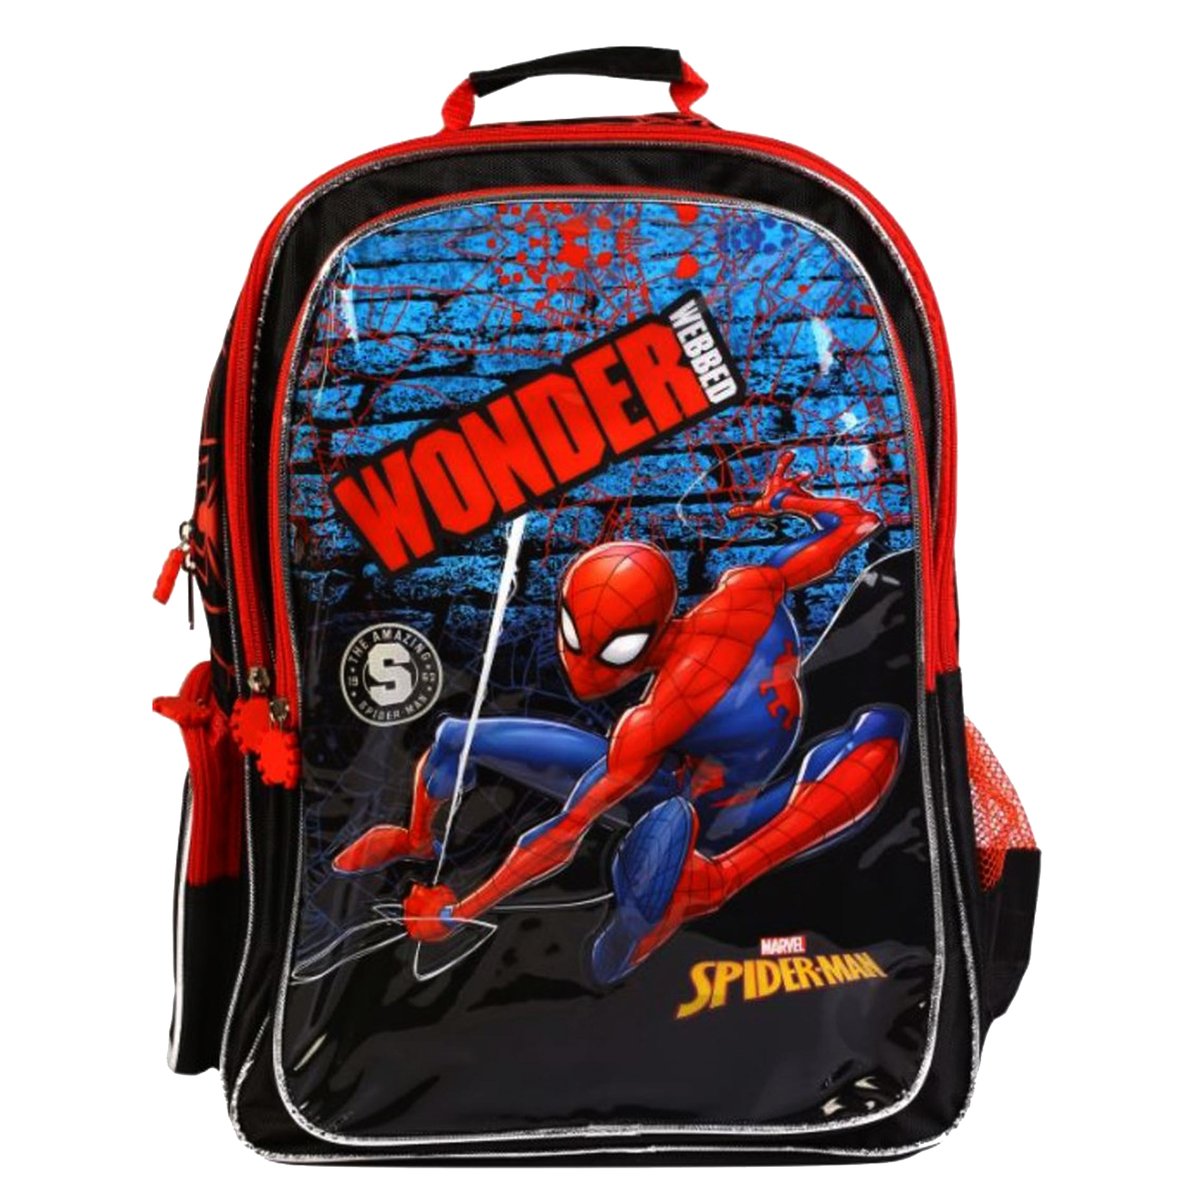 SpiderMan Backpack FK160391 16in